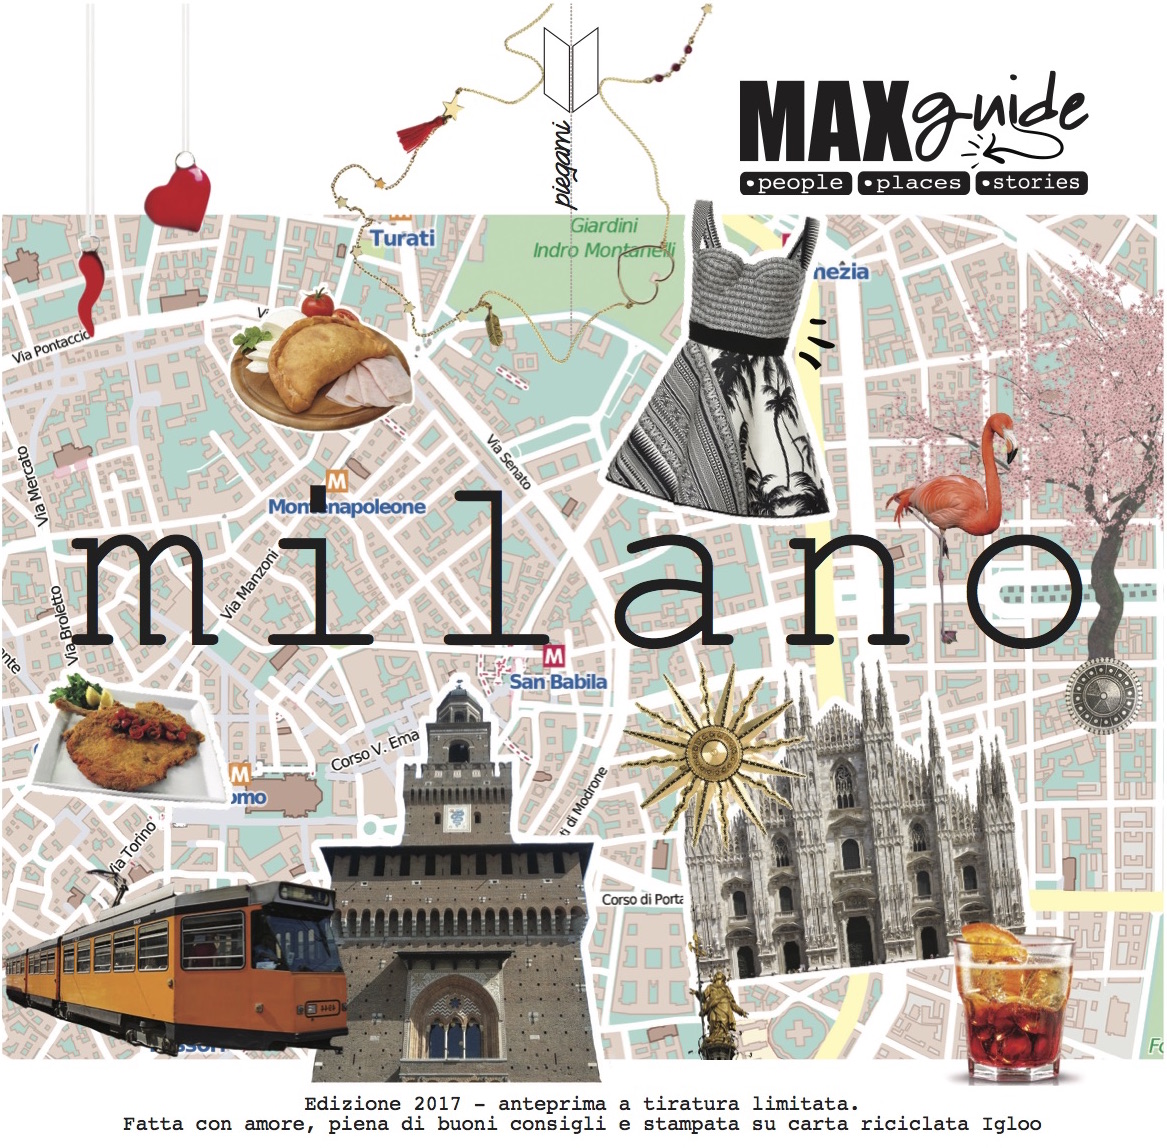 La rivoluzionaria guida di Milano, MaxGuide, vince il contest Igloo Festival promosso da Arjowiggins Graphic